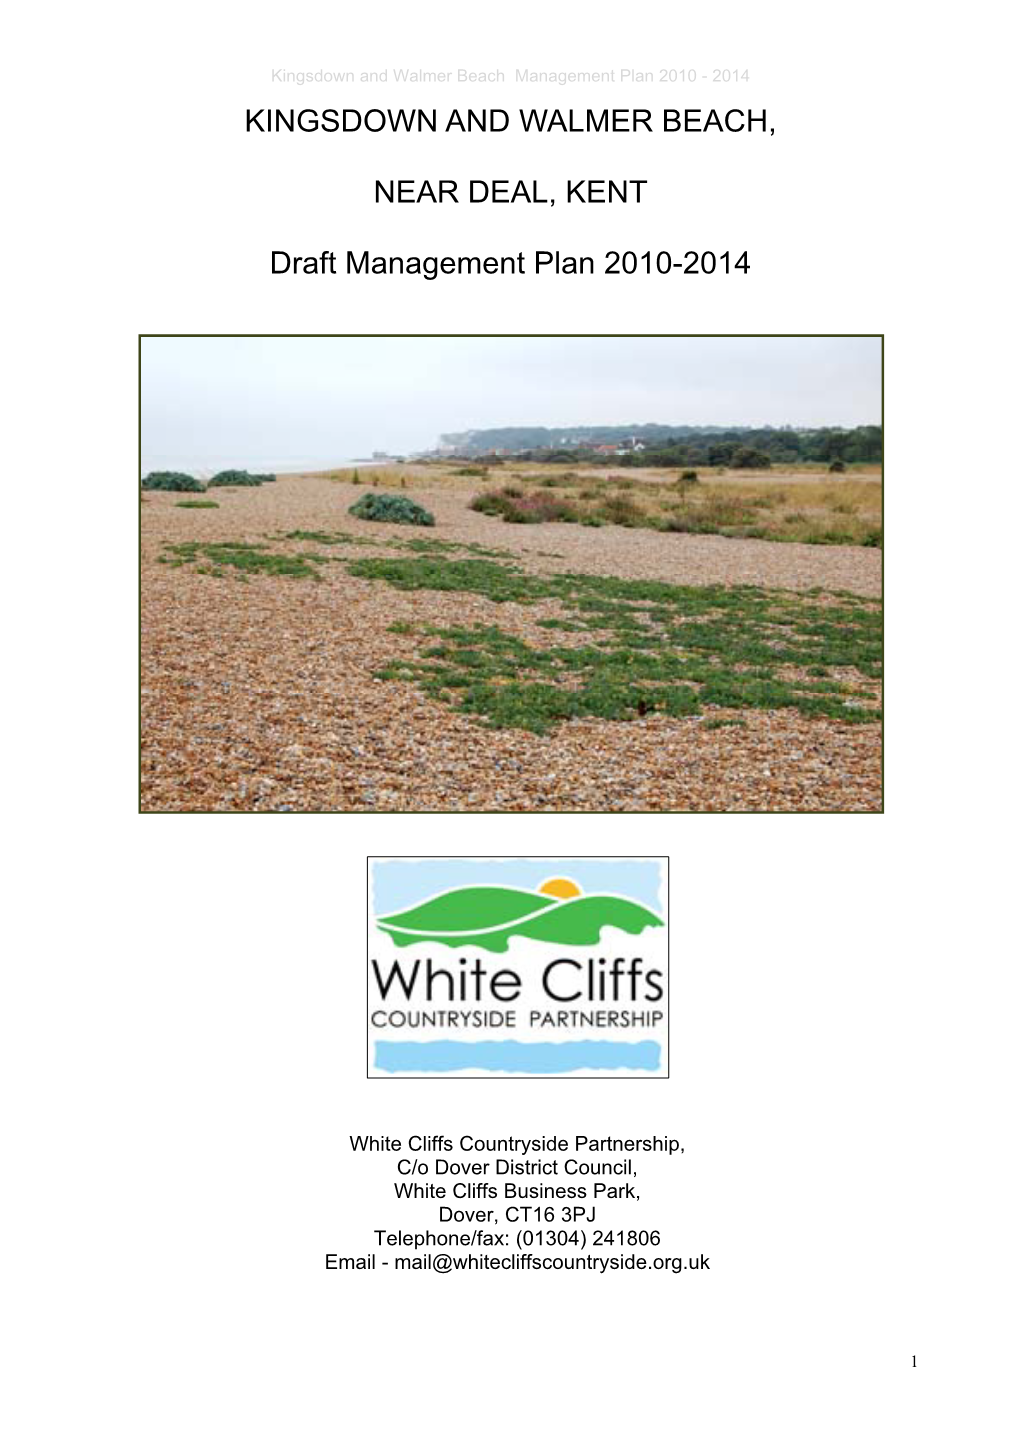 KINGSDOWN and WALMER BEACH, NEAR DEAL, KENT Draft Management Plan 2010-2014